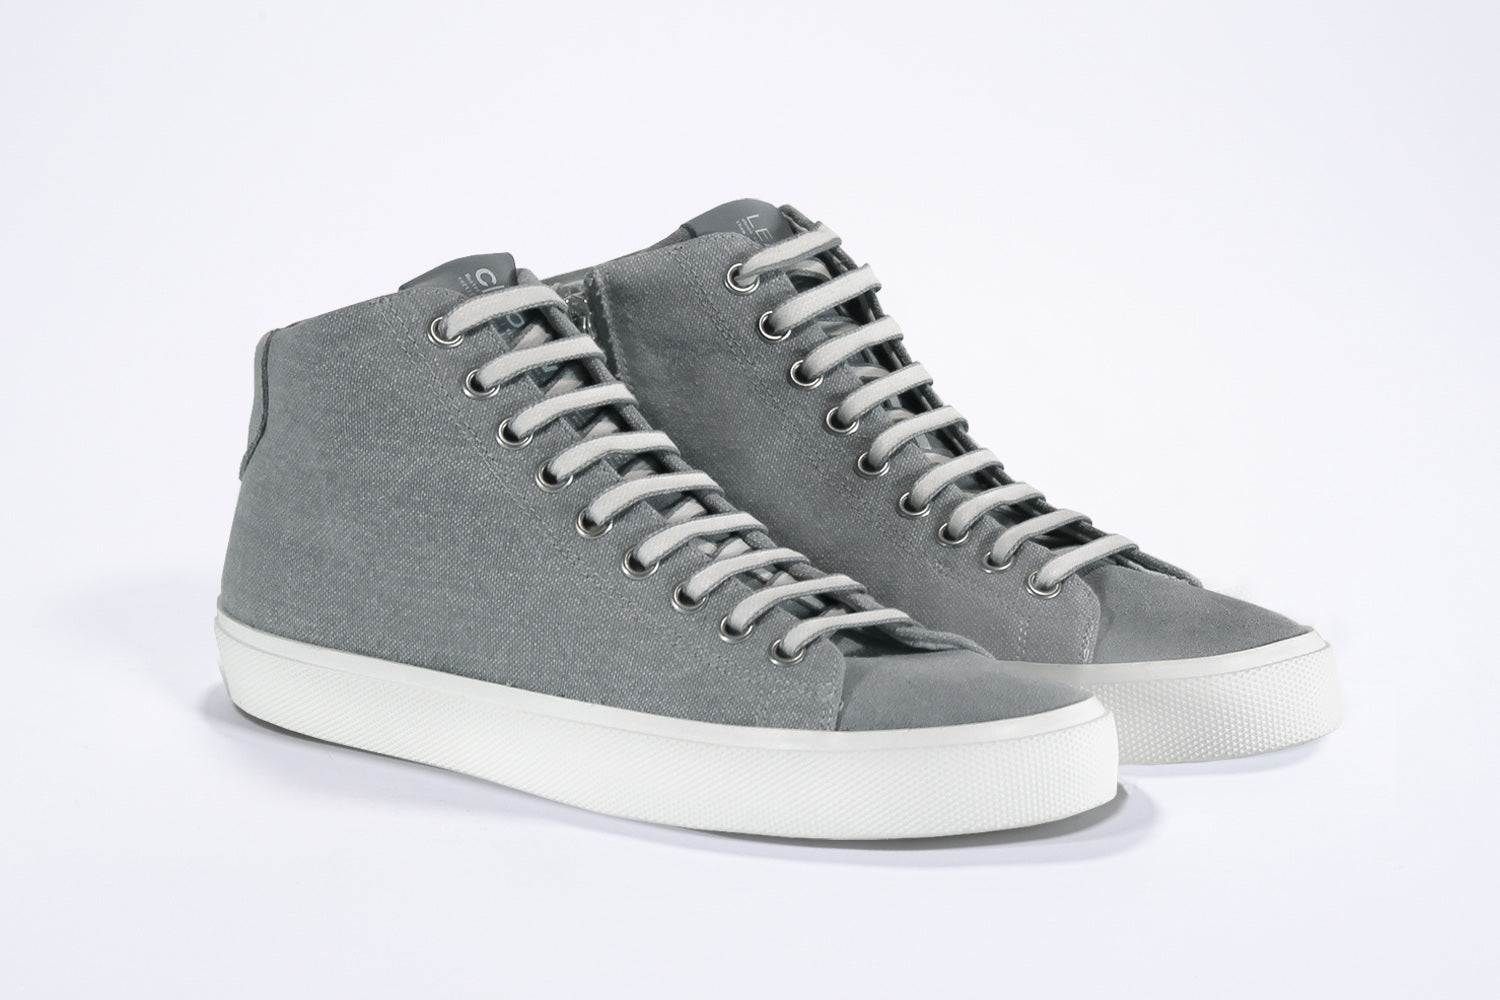 Dreiviertelansicht der Vorderseite von sneaker mit durchgehend grauem Canvas-Obermaterial, innerem Reißverschluss und weißer Sohle.